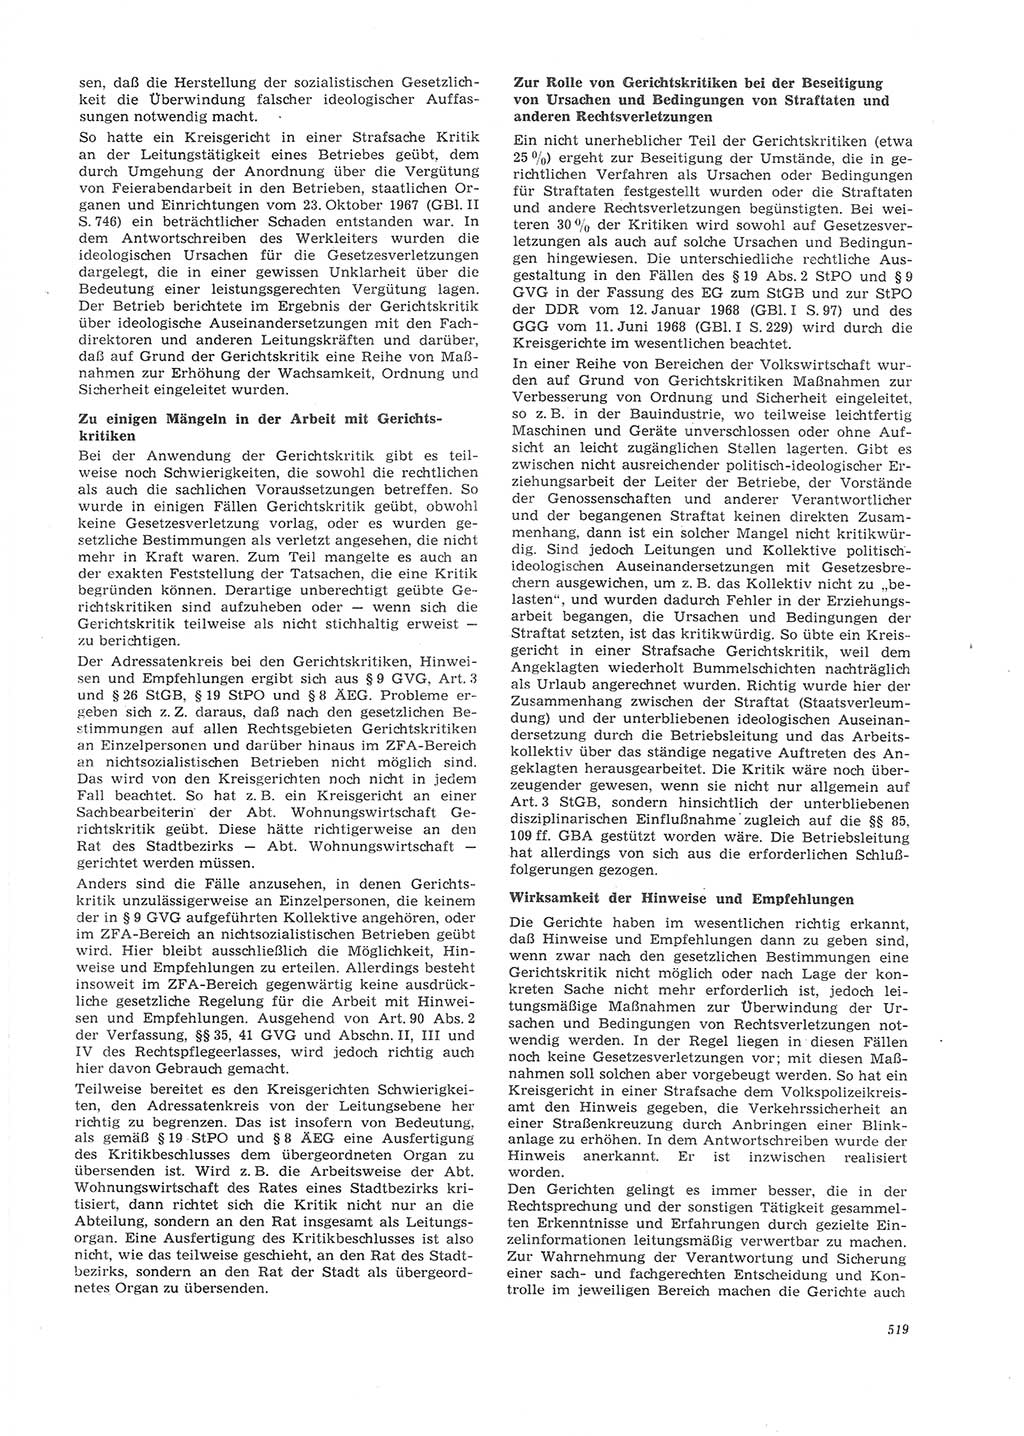 Neue Justiz (NJ), Zeitschrift für Recht und Rechtswissenschaft [Deutsche Demokratische Republik (DDR)], 26. Jahrgang 1972, Seite 519 (NJ DDR 1972, S. 519)